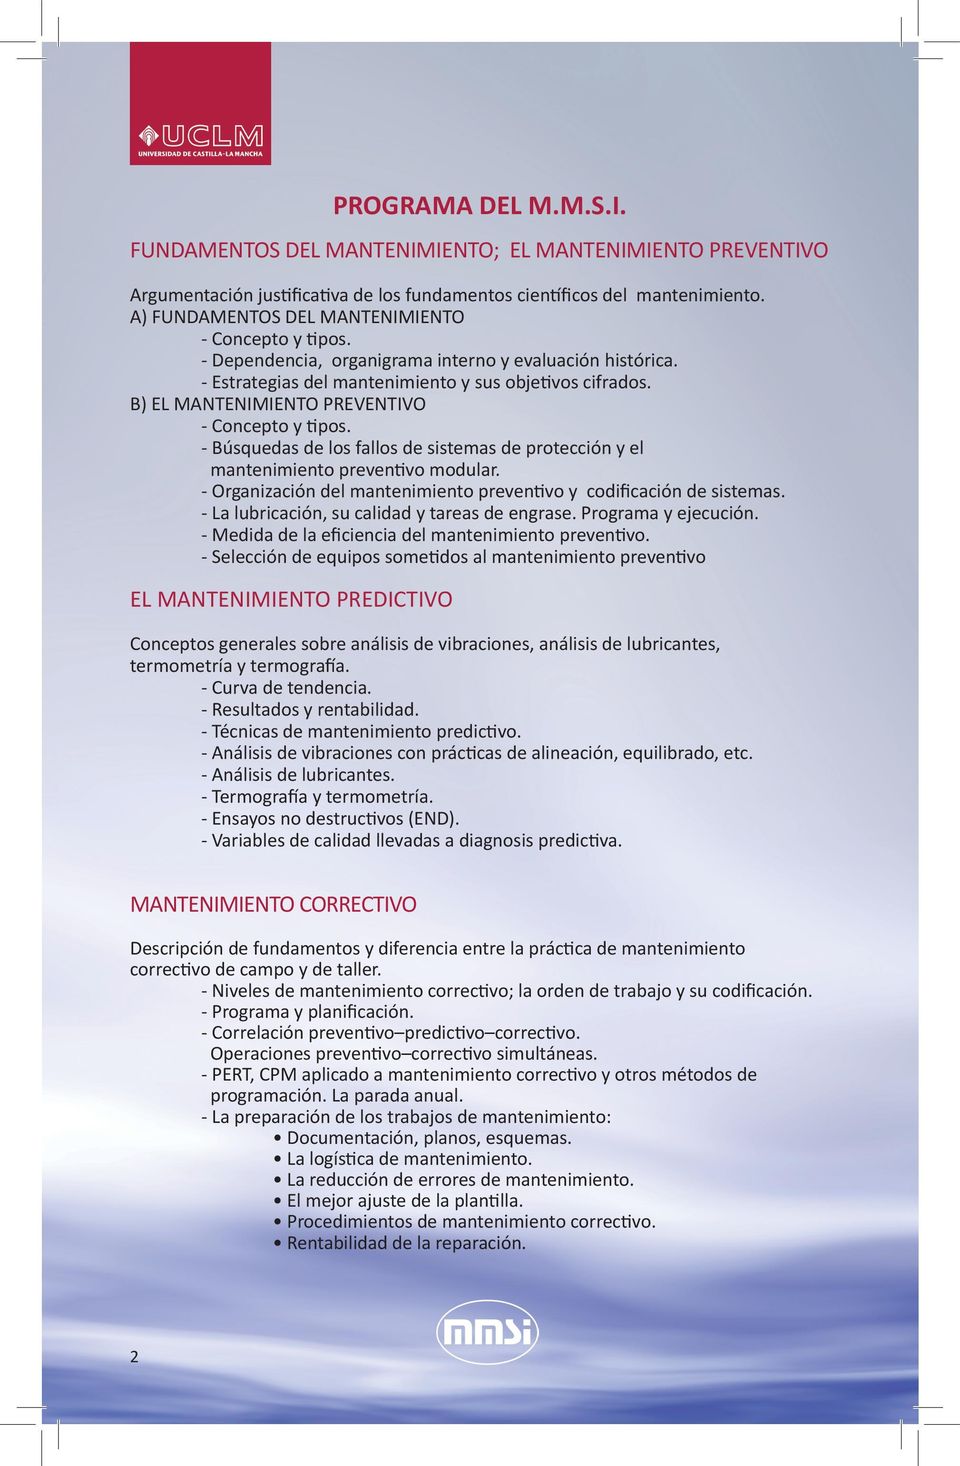 B) EL MANTENIMIENTO PREVENTIVO - Concepto y tipos. - Búsquedas de los fallos de sistemas de protección y el mantenimiento preventivo modular.